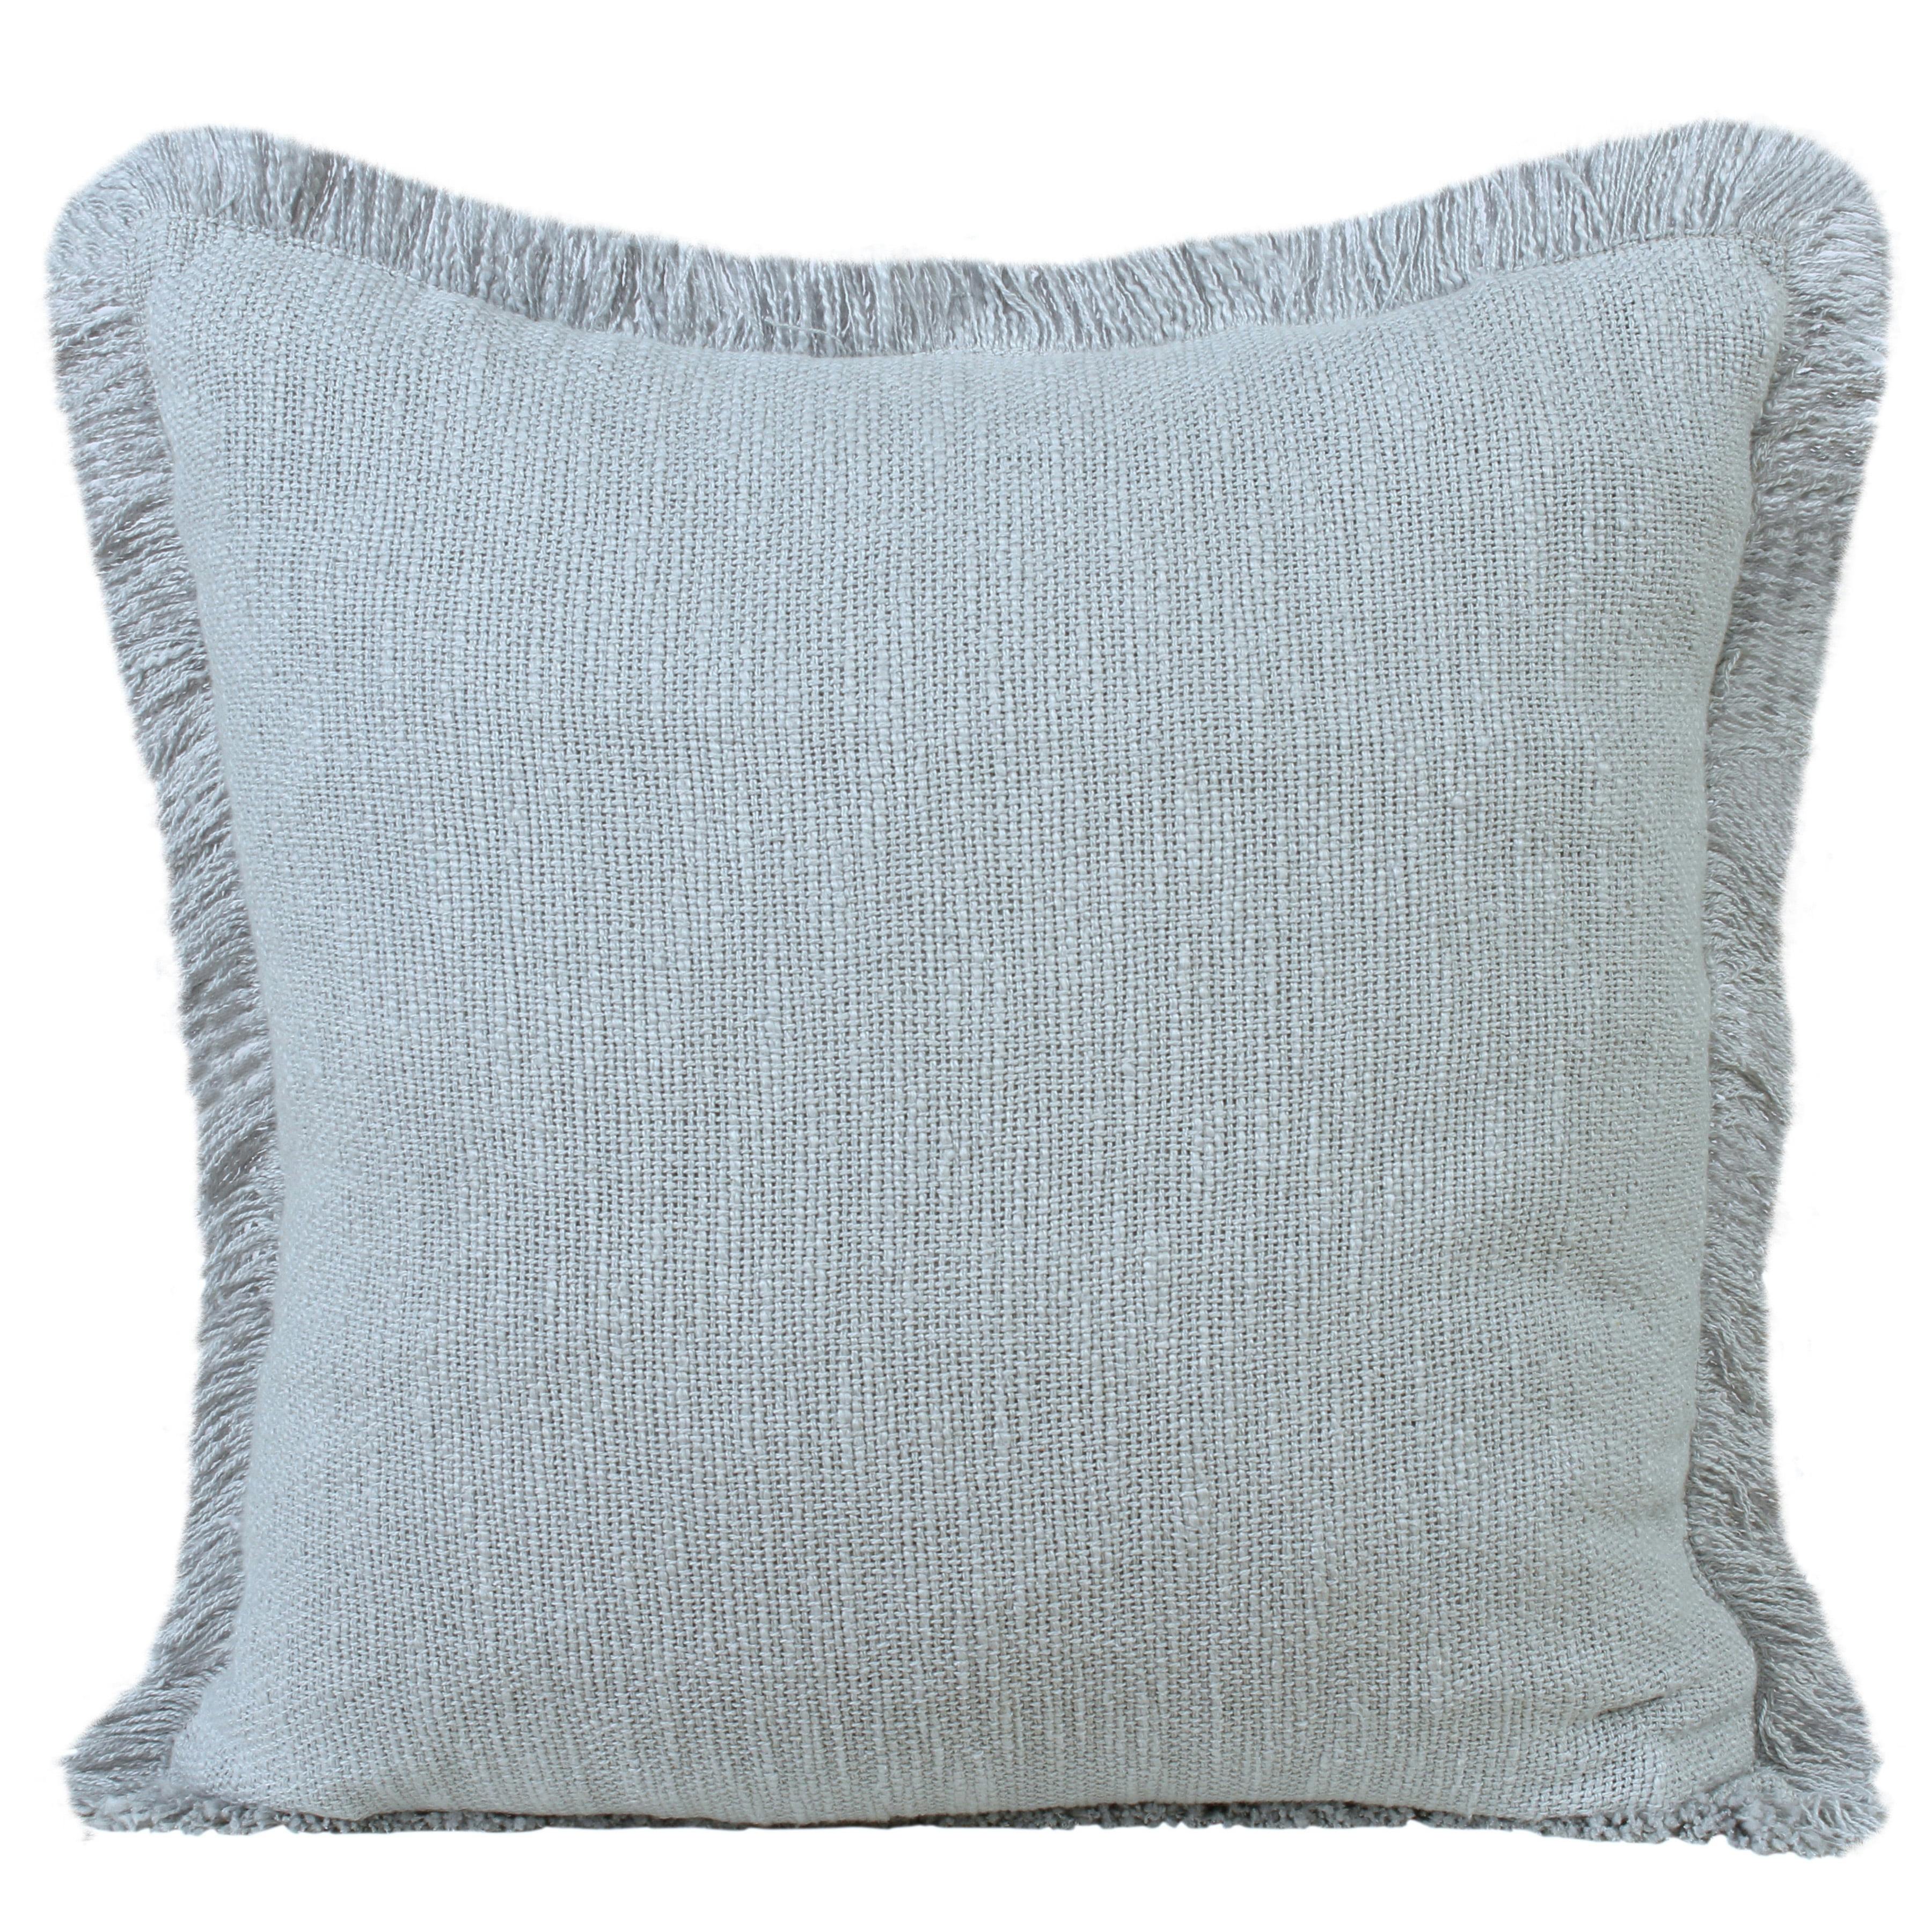 Coastal Charm 20" x 20" Gray Cotton Fringed Throw Pillow